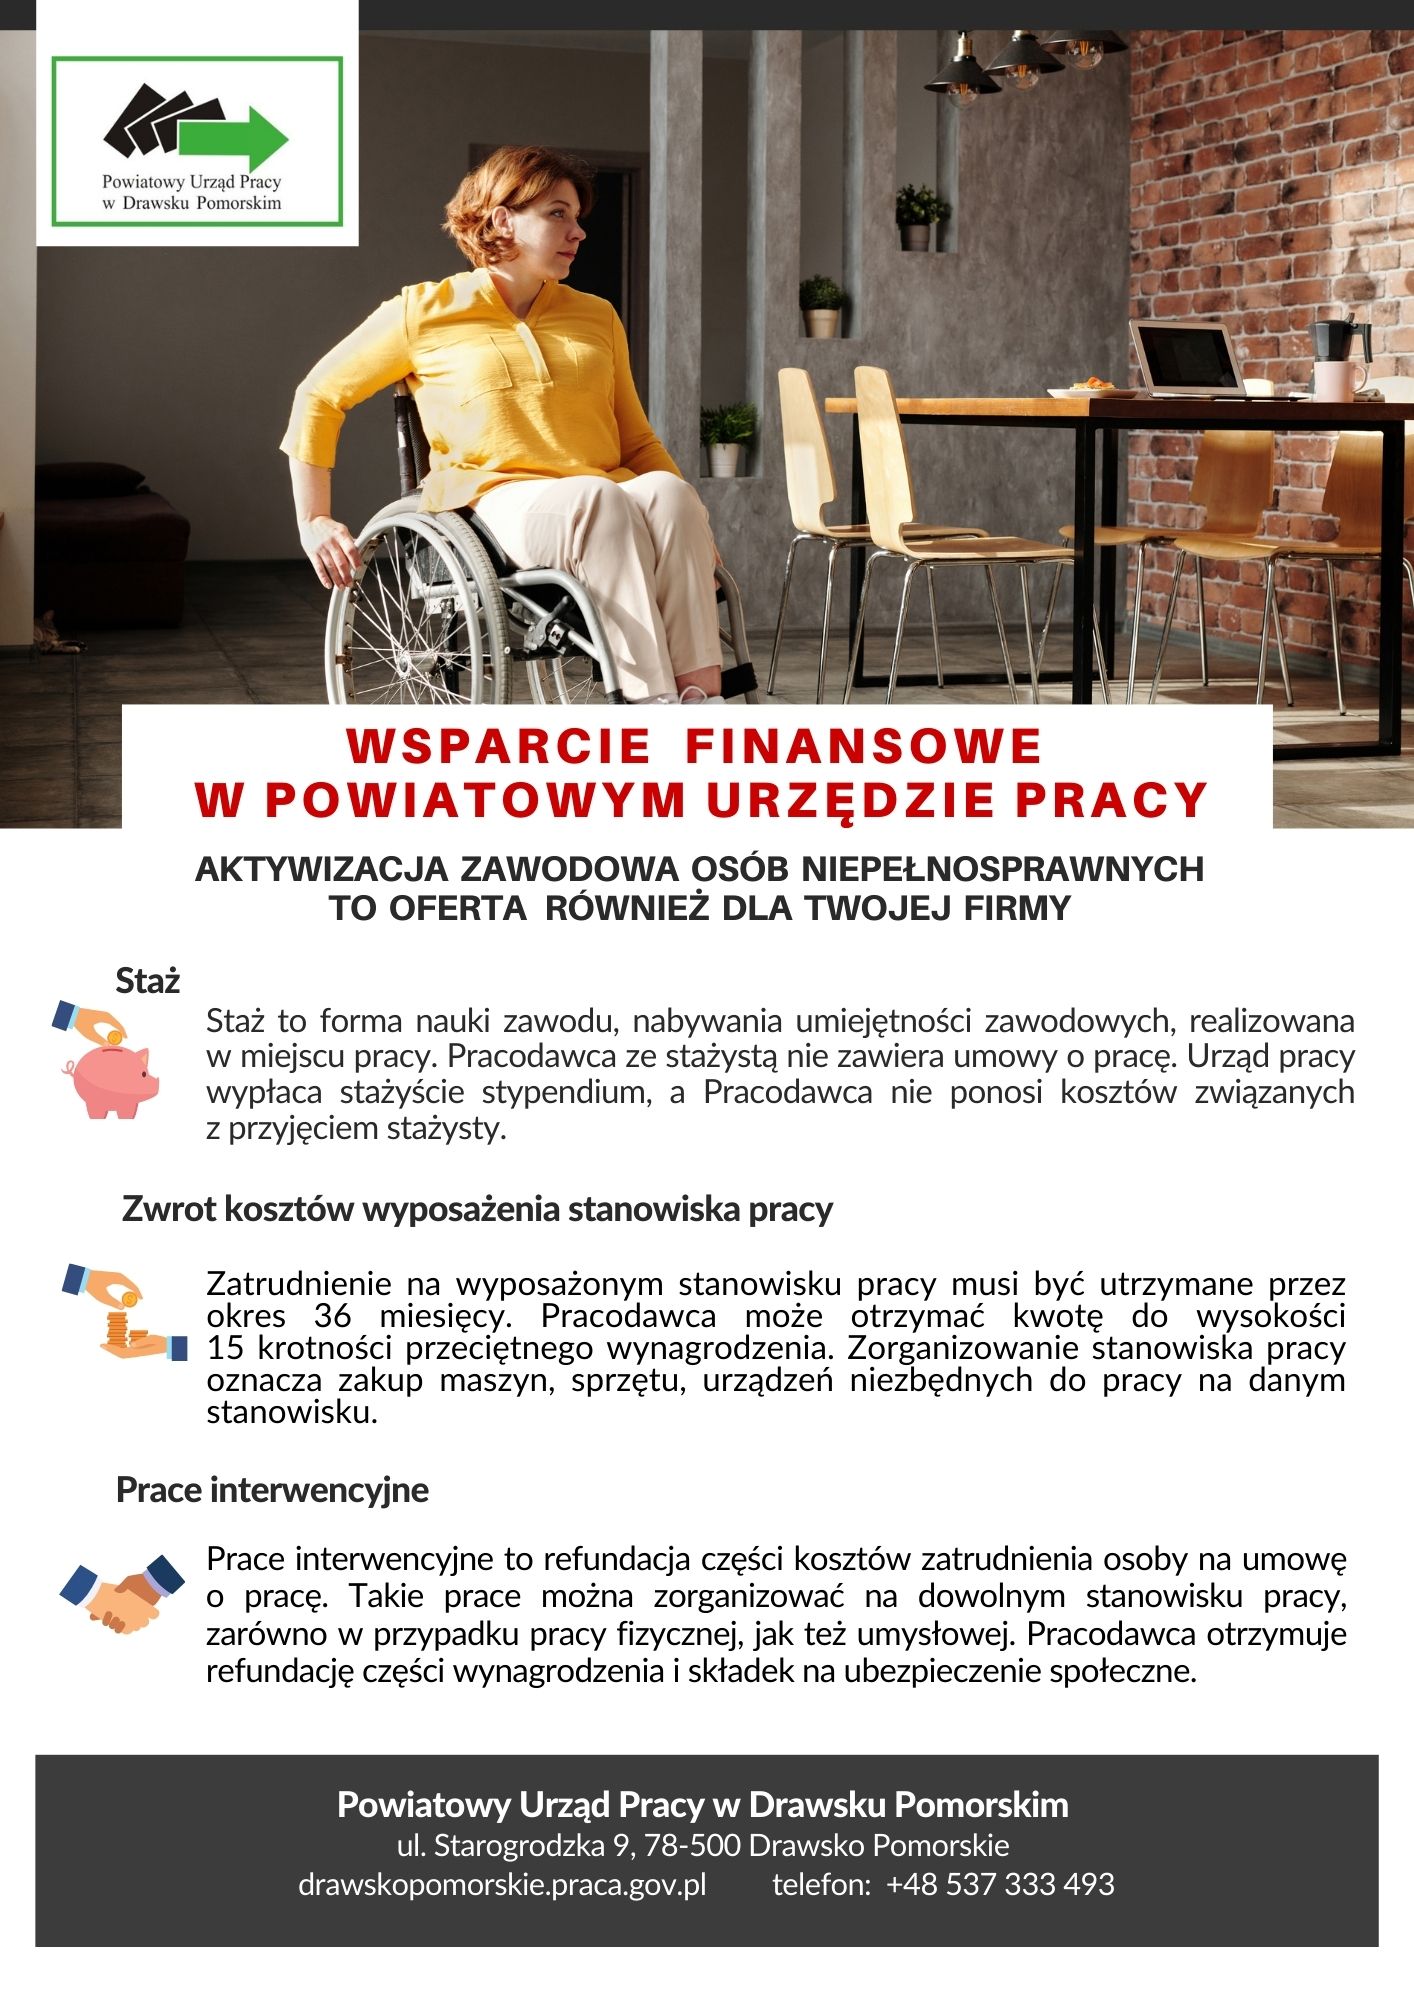 Oferta aktywizacji zawodowej osób niepełnosprawnych dostępna w PUP, finansowana ze środków PFRON.